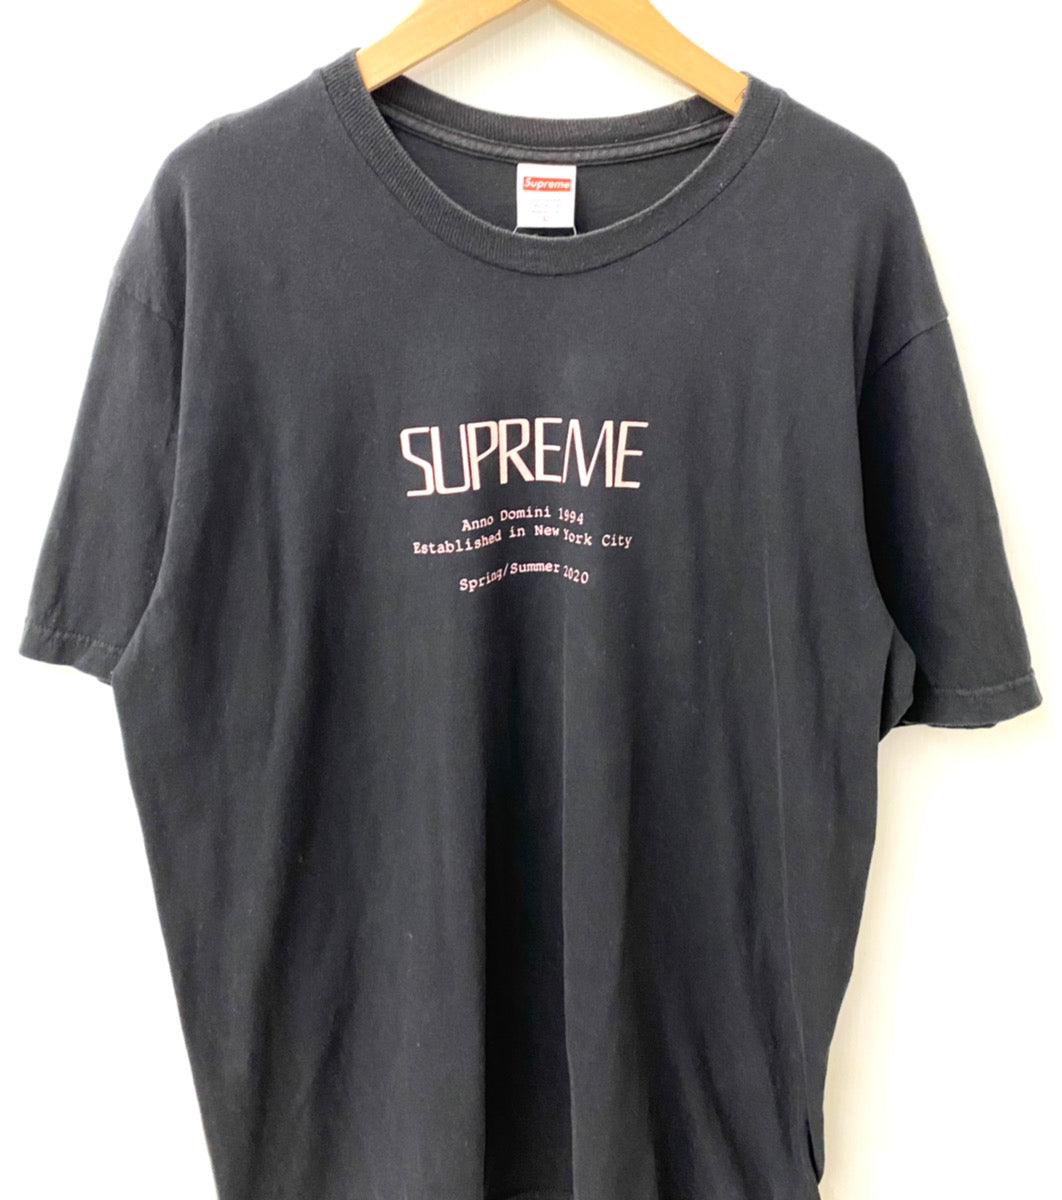 シュプリーム SUPREME Anno Domini Tee Tシャツ ロゴ ブラック Lサイズ